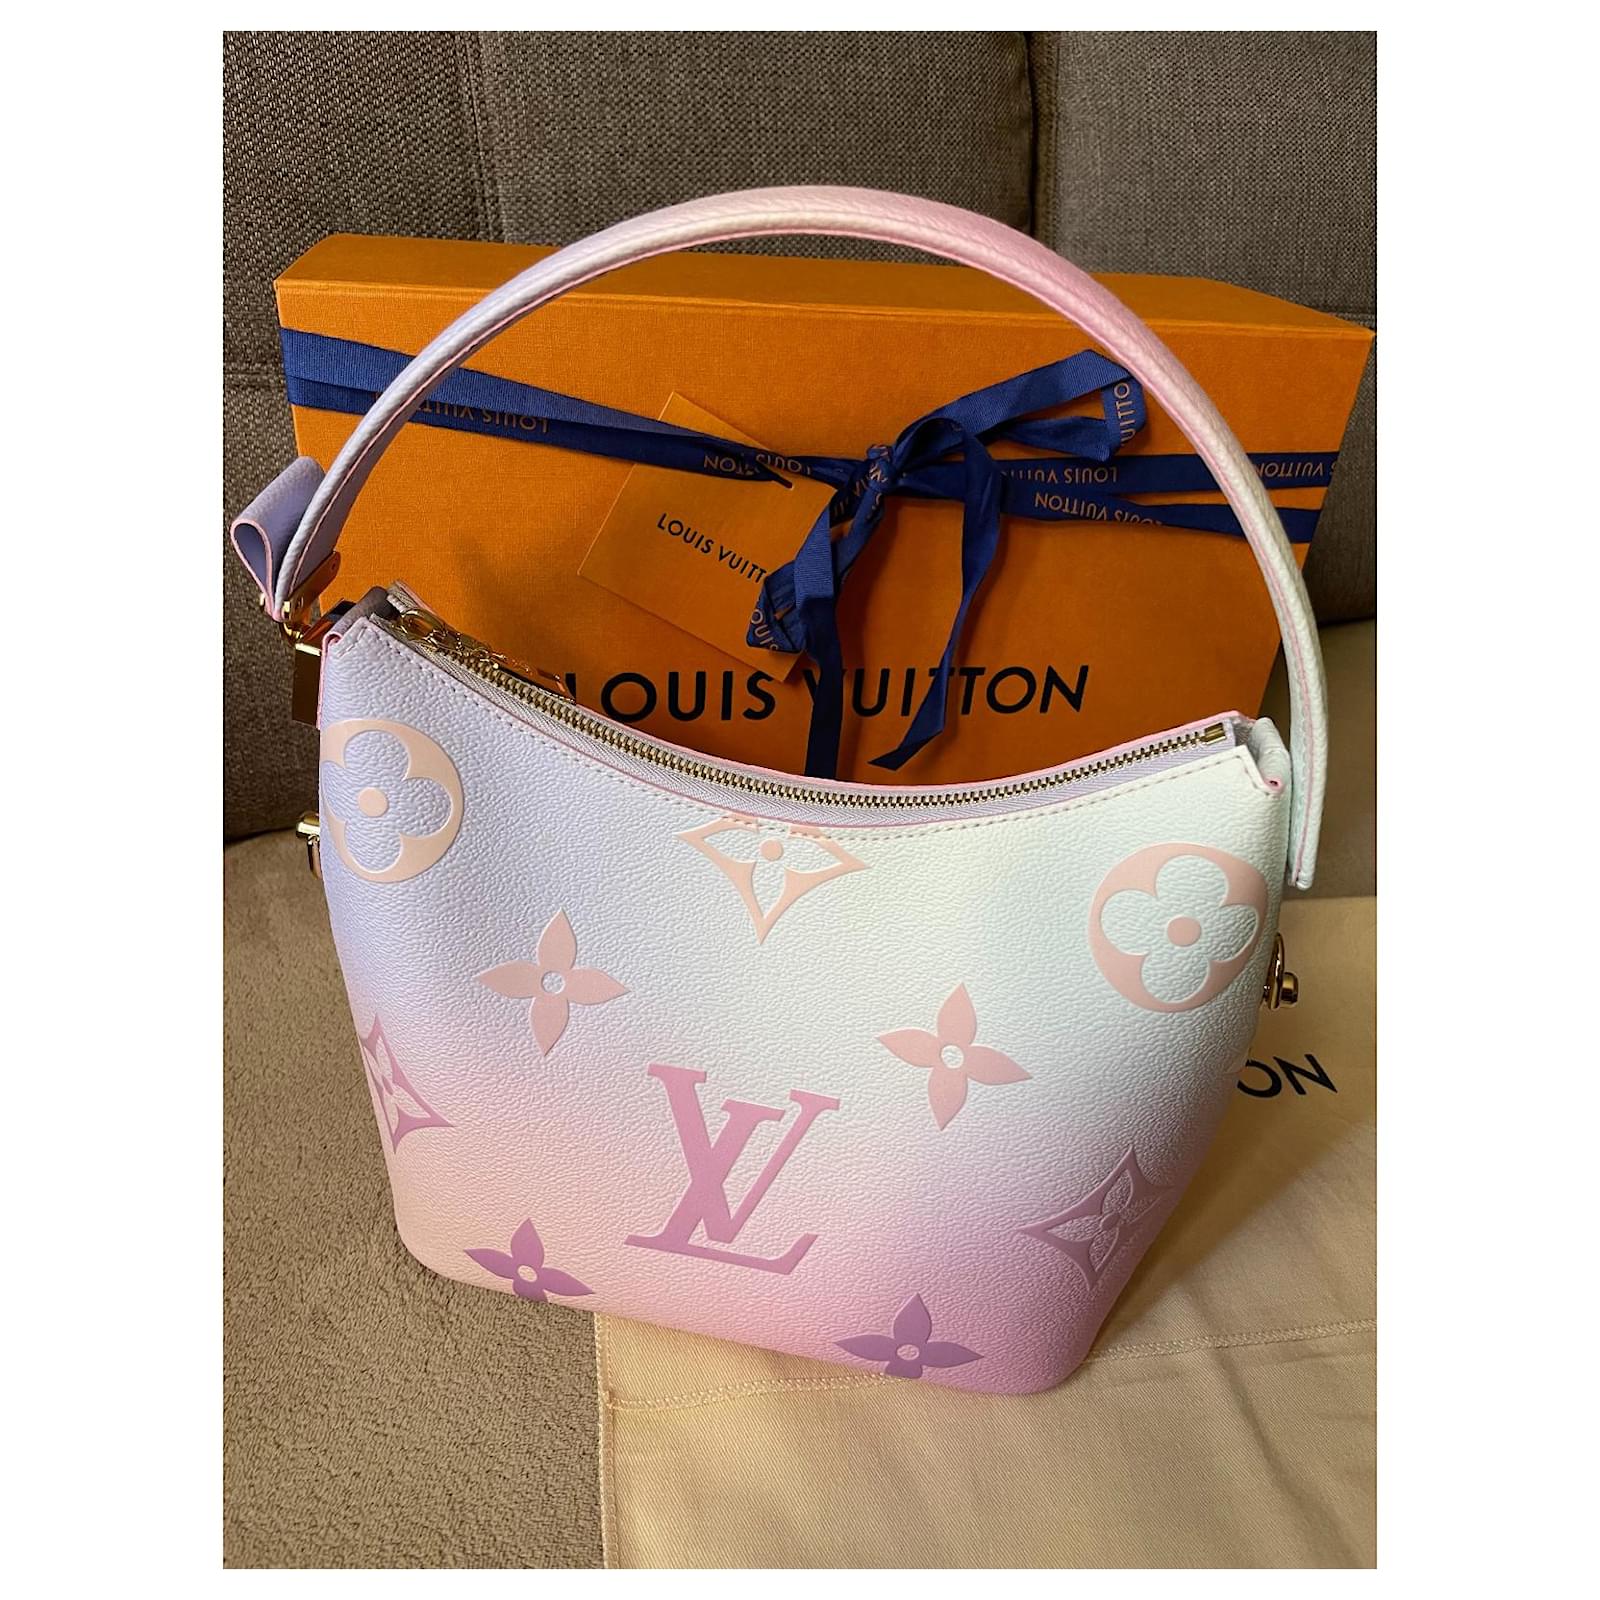 Louis Vuitton Marshmallow PM Sunrise Pastel Bag Size 24*22*13 cm Adjustable  detachable strap IDR 23jt